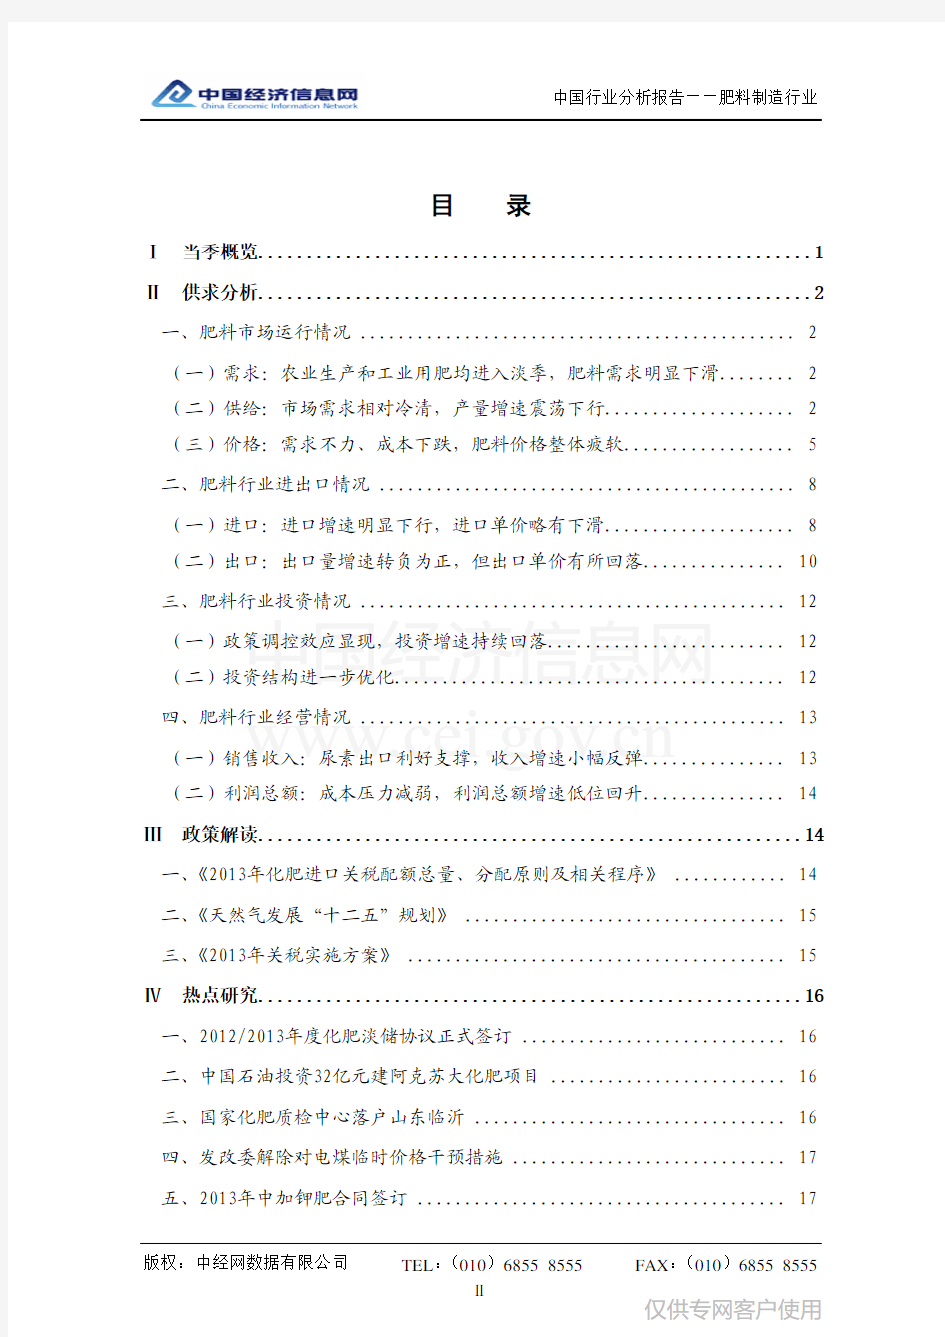 中国肥料行业分析报告(2012年四季度)